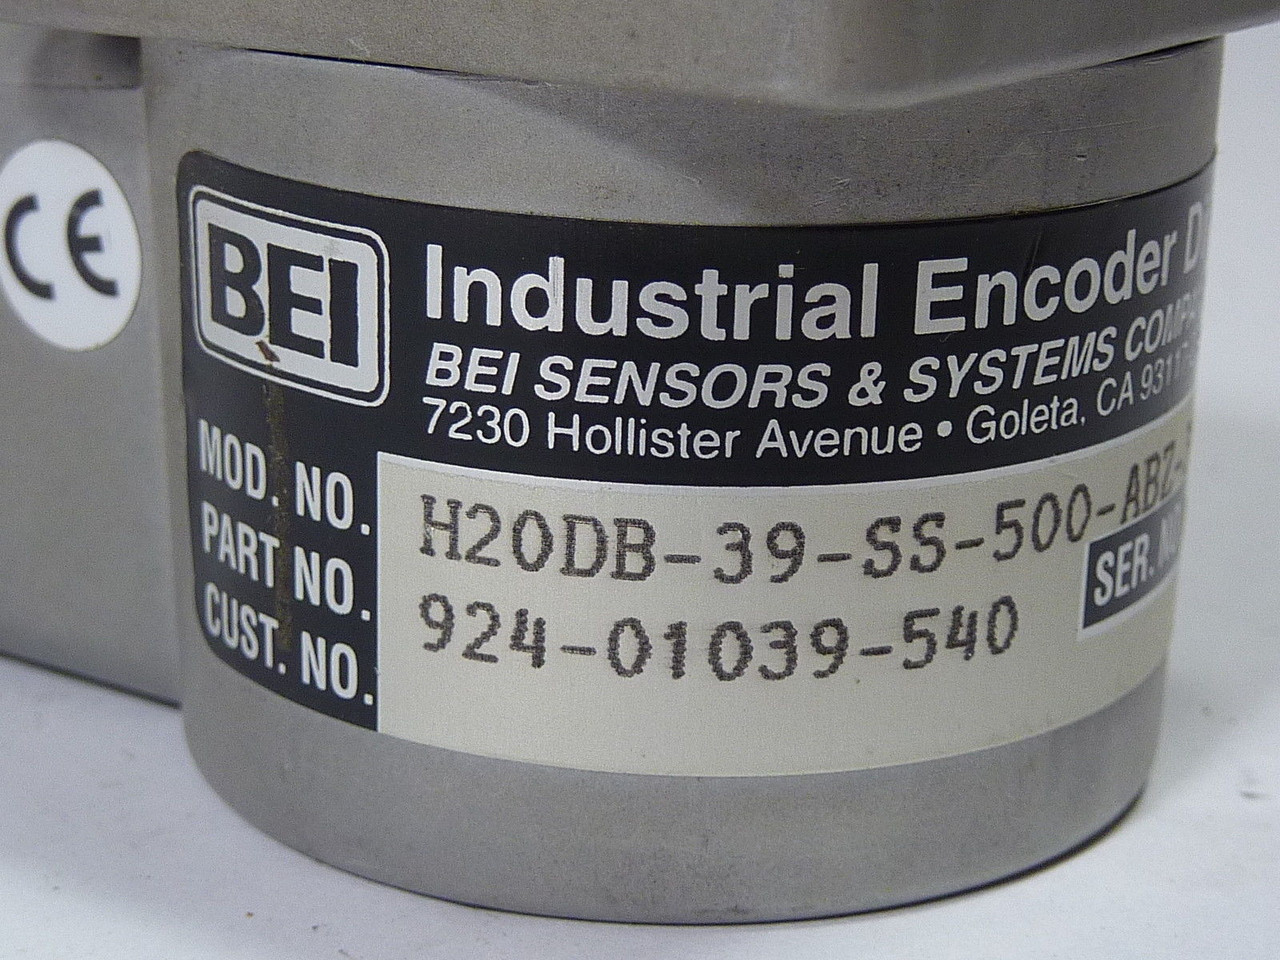 BEI Industrial 924-01039-540 Encoder VDC IN 24 USED